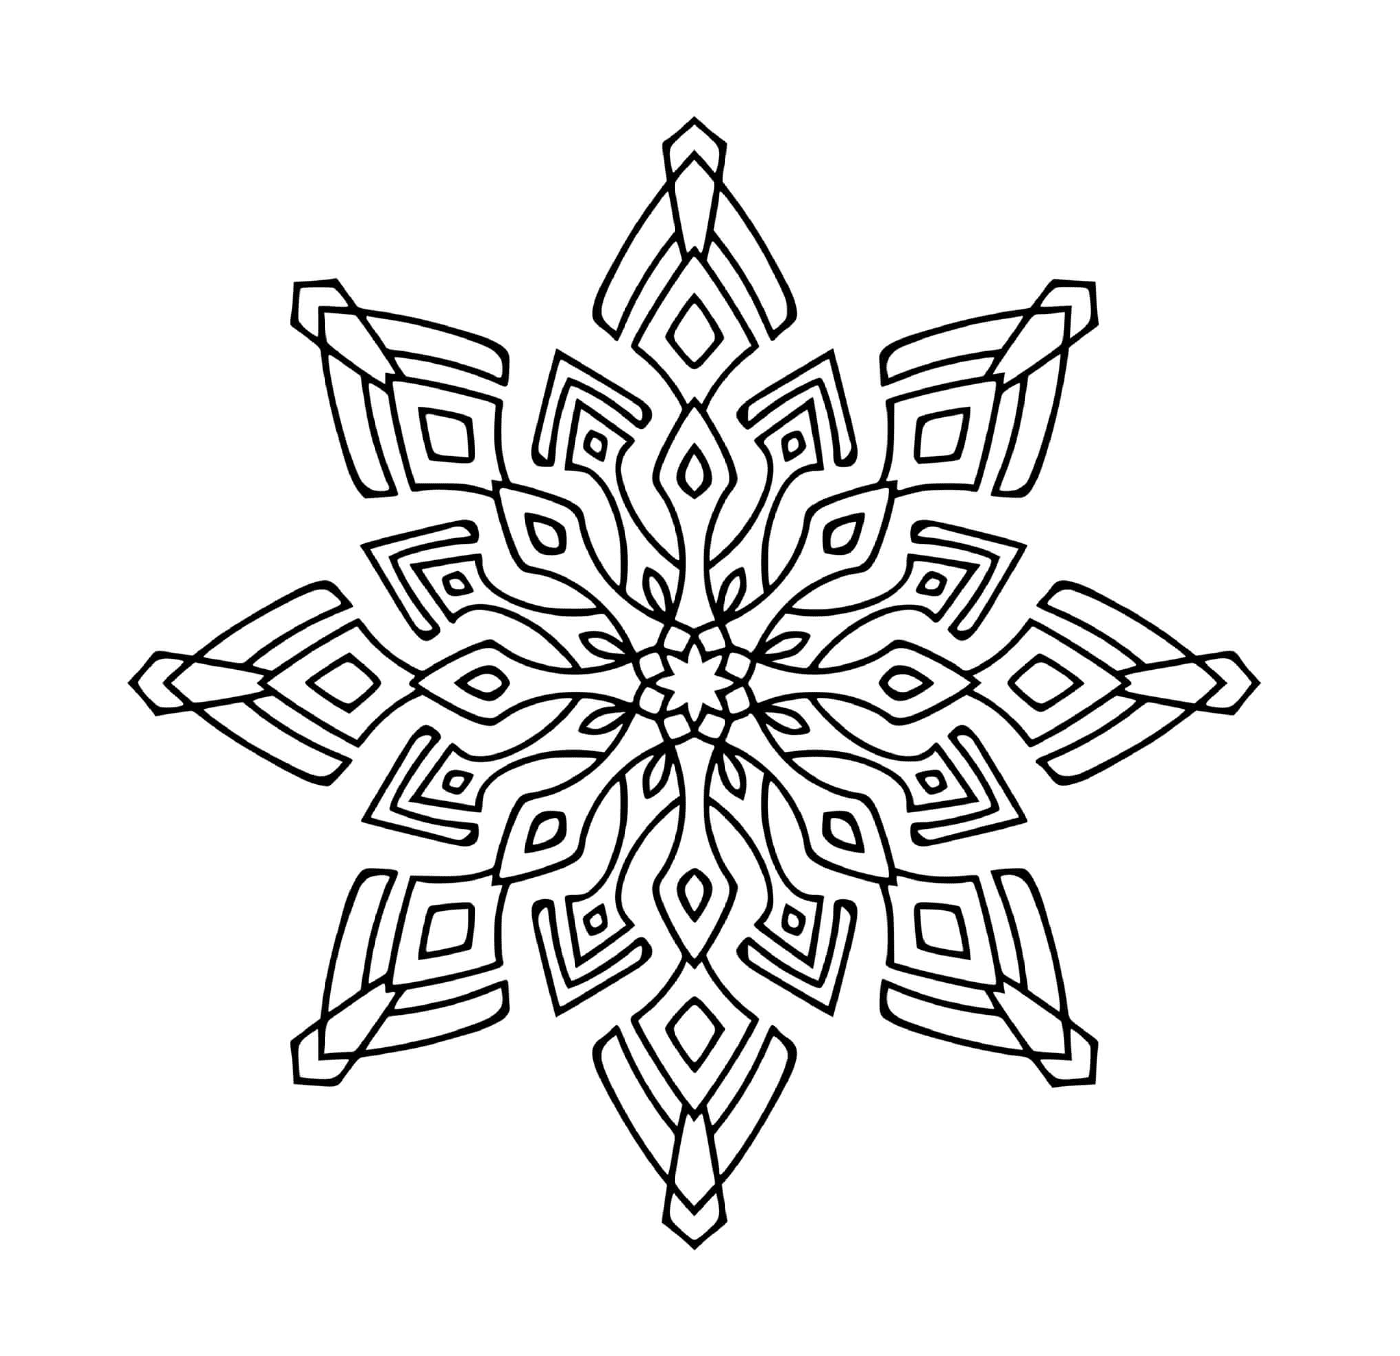  Un moderno design di fiocchi di neve in mandala 